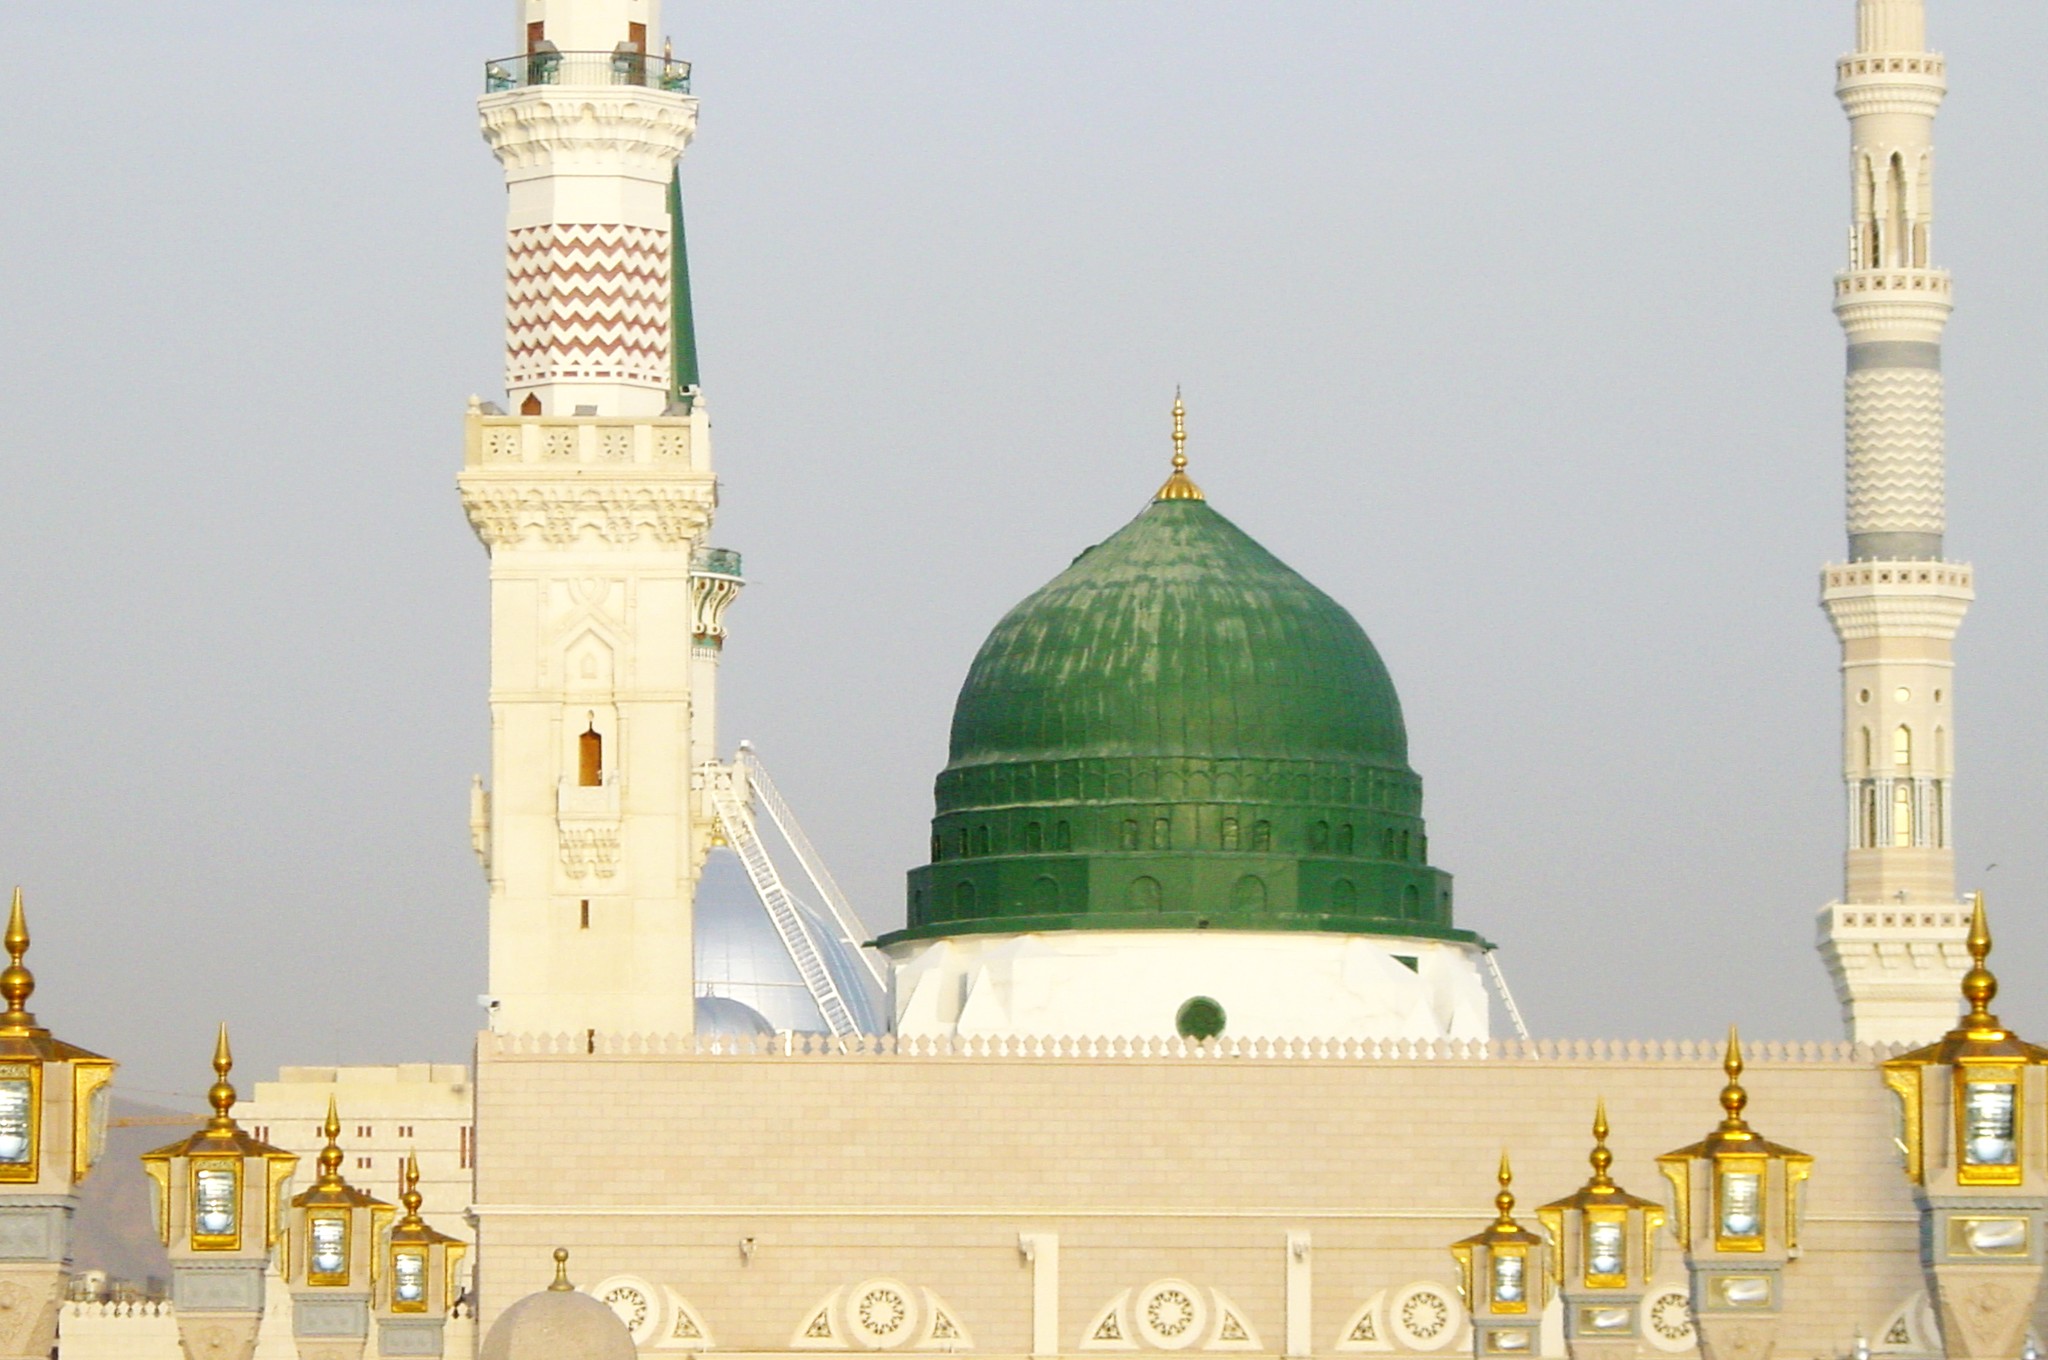 Скачать картинку Мечеть, Религиозные, Мечети в телефон бесплатно.